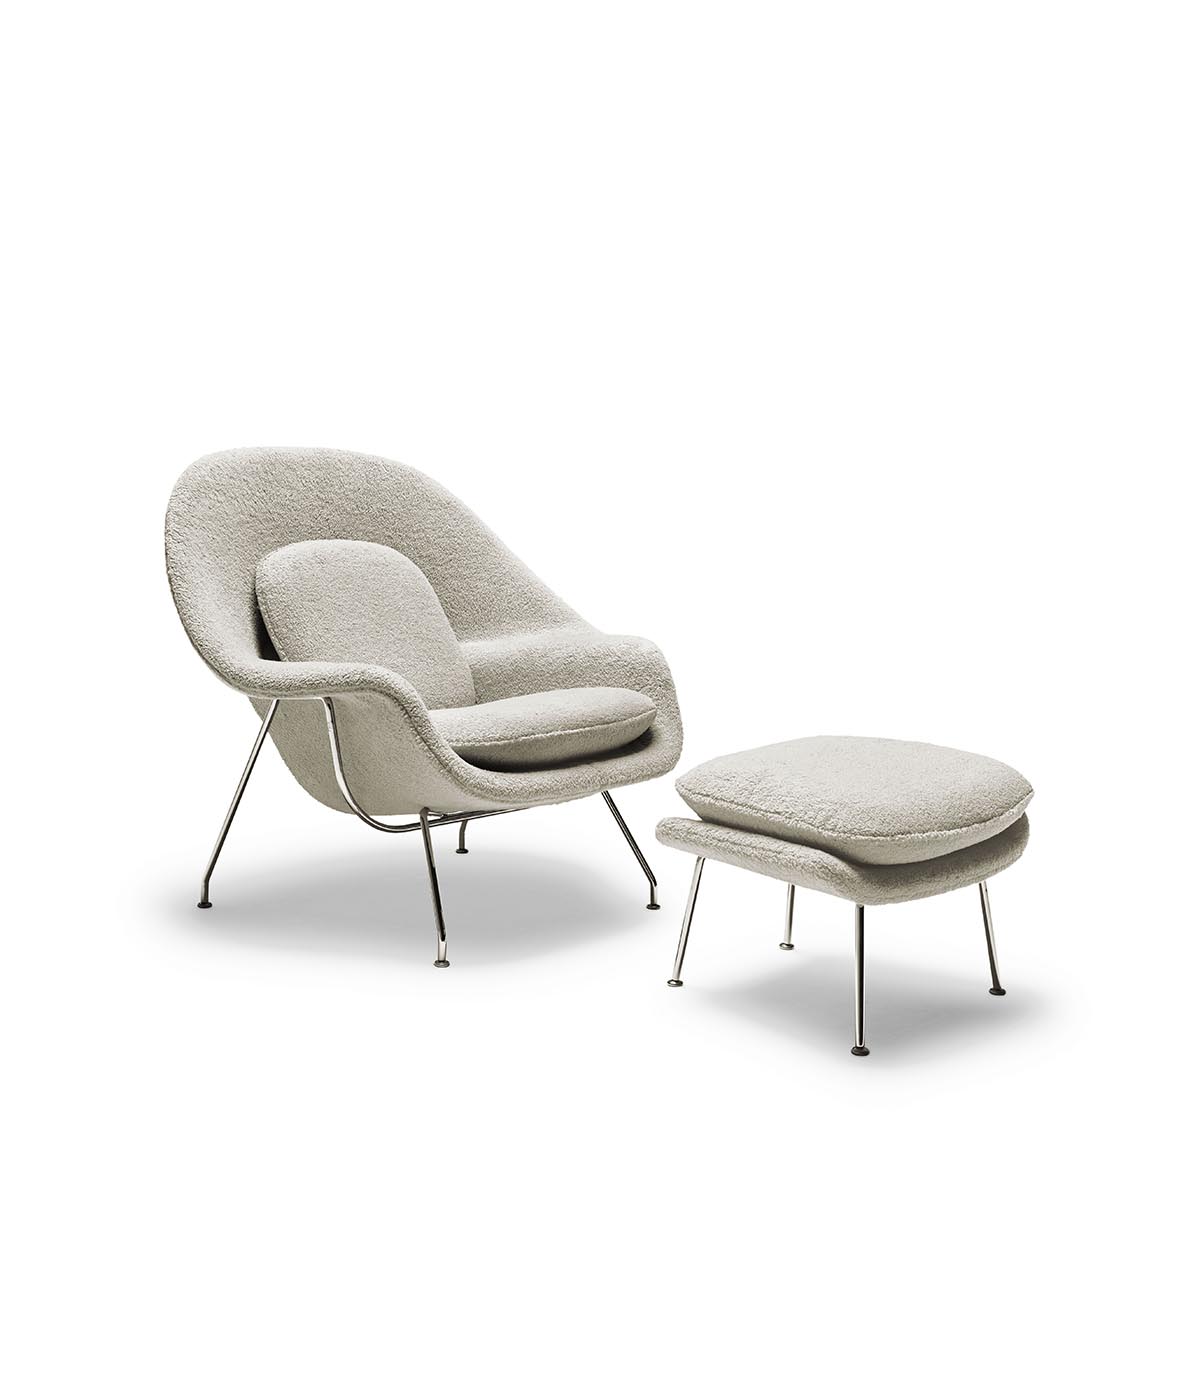 Womb Chair Designed by Eero Saarinen, 1946